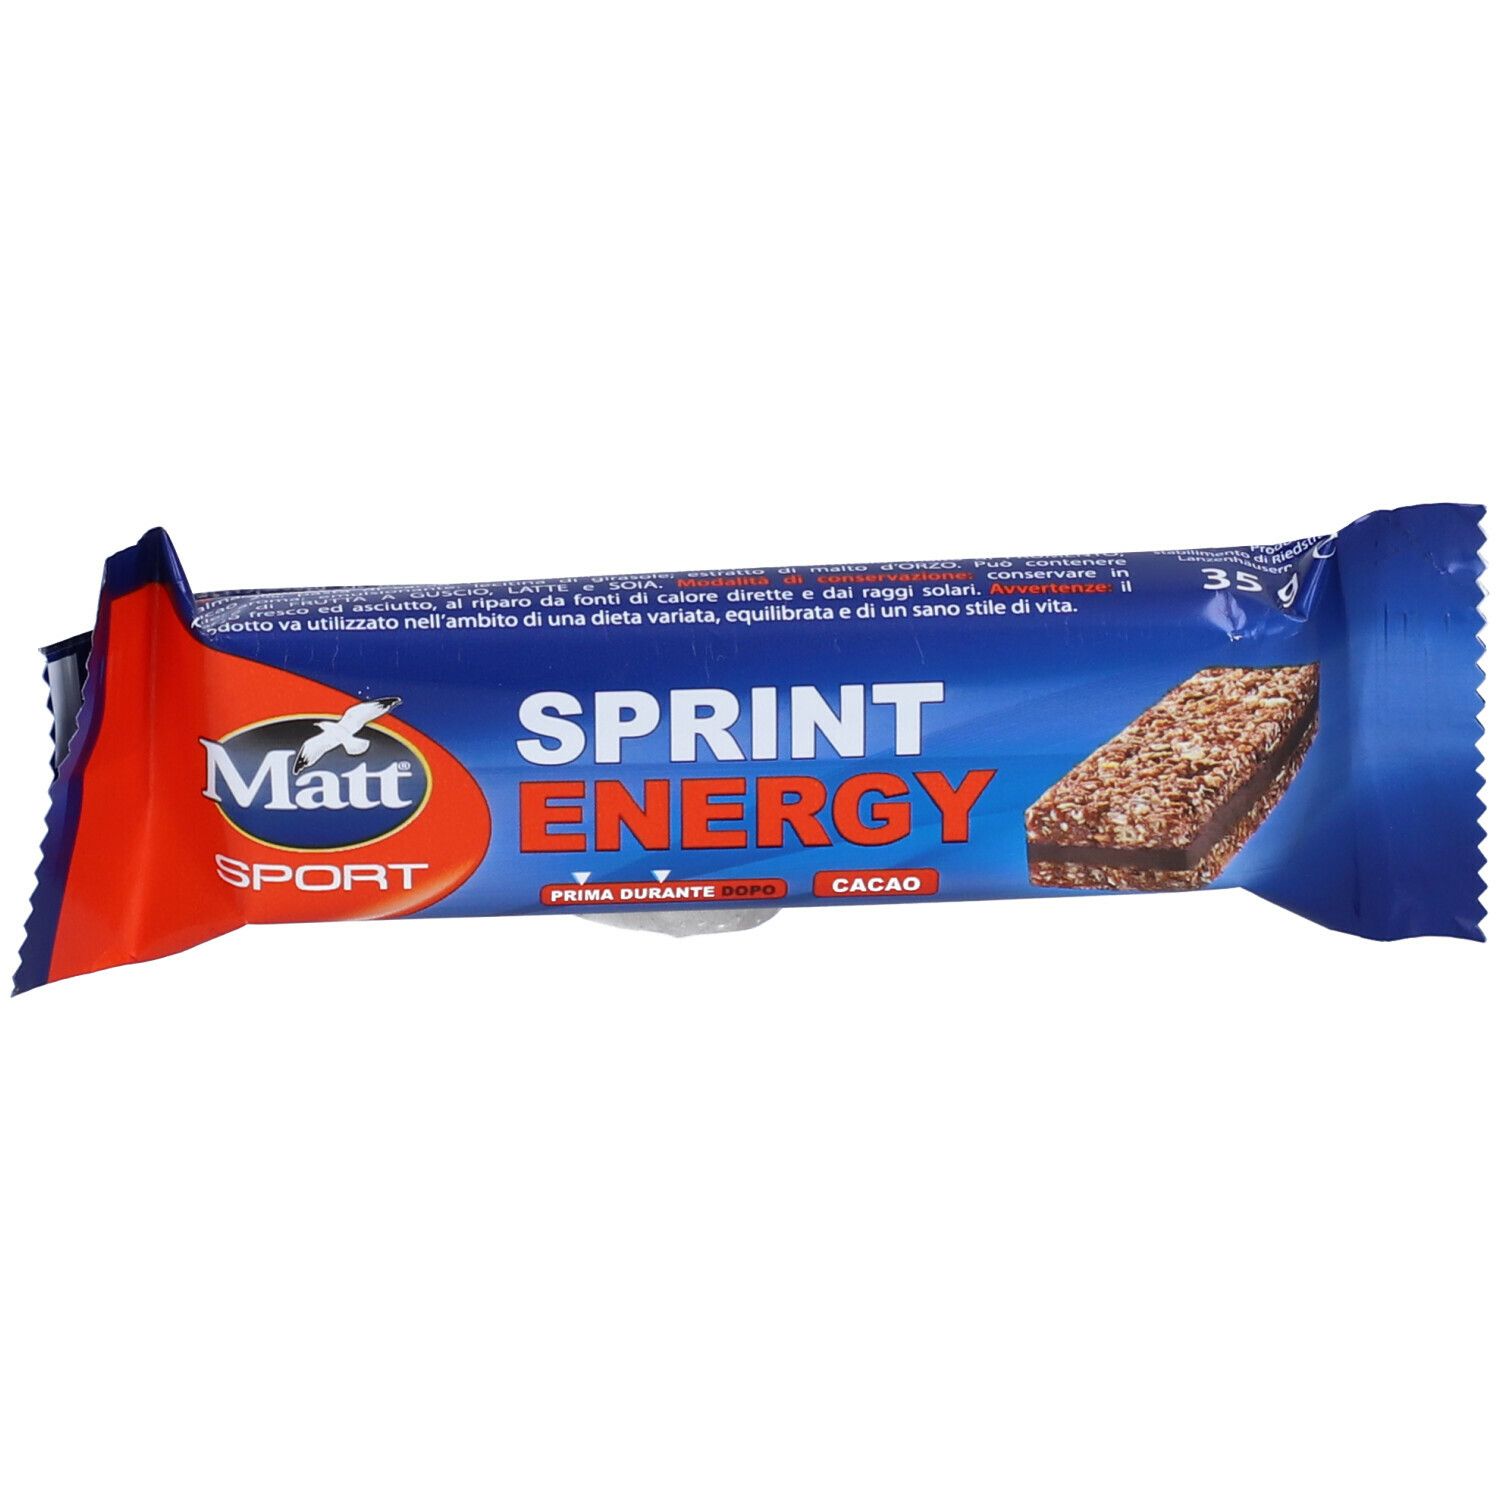 Image of MATT Sport Energy Sprint Cacao